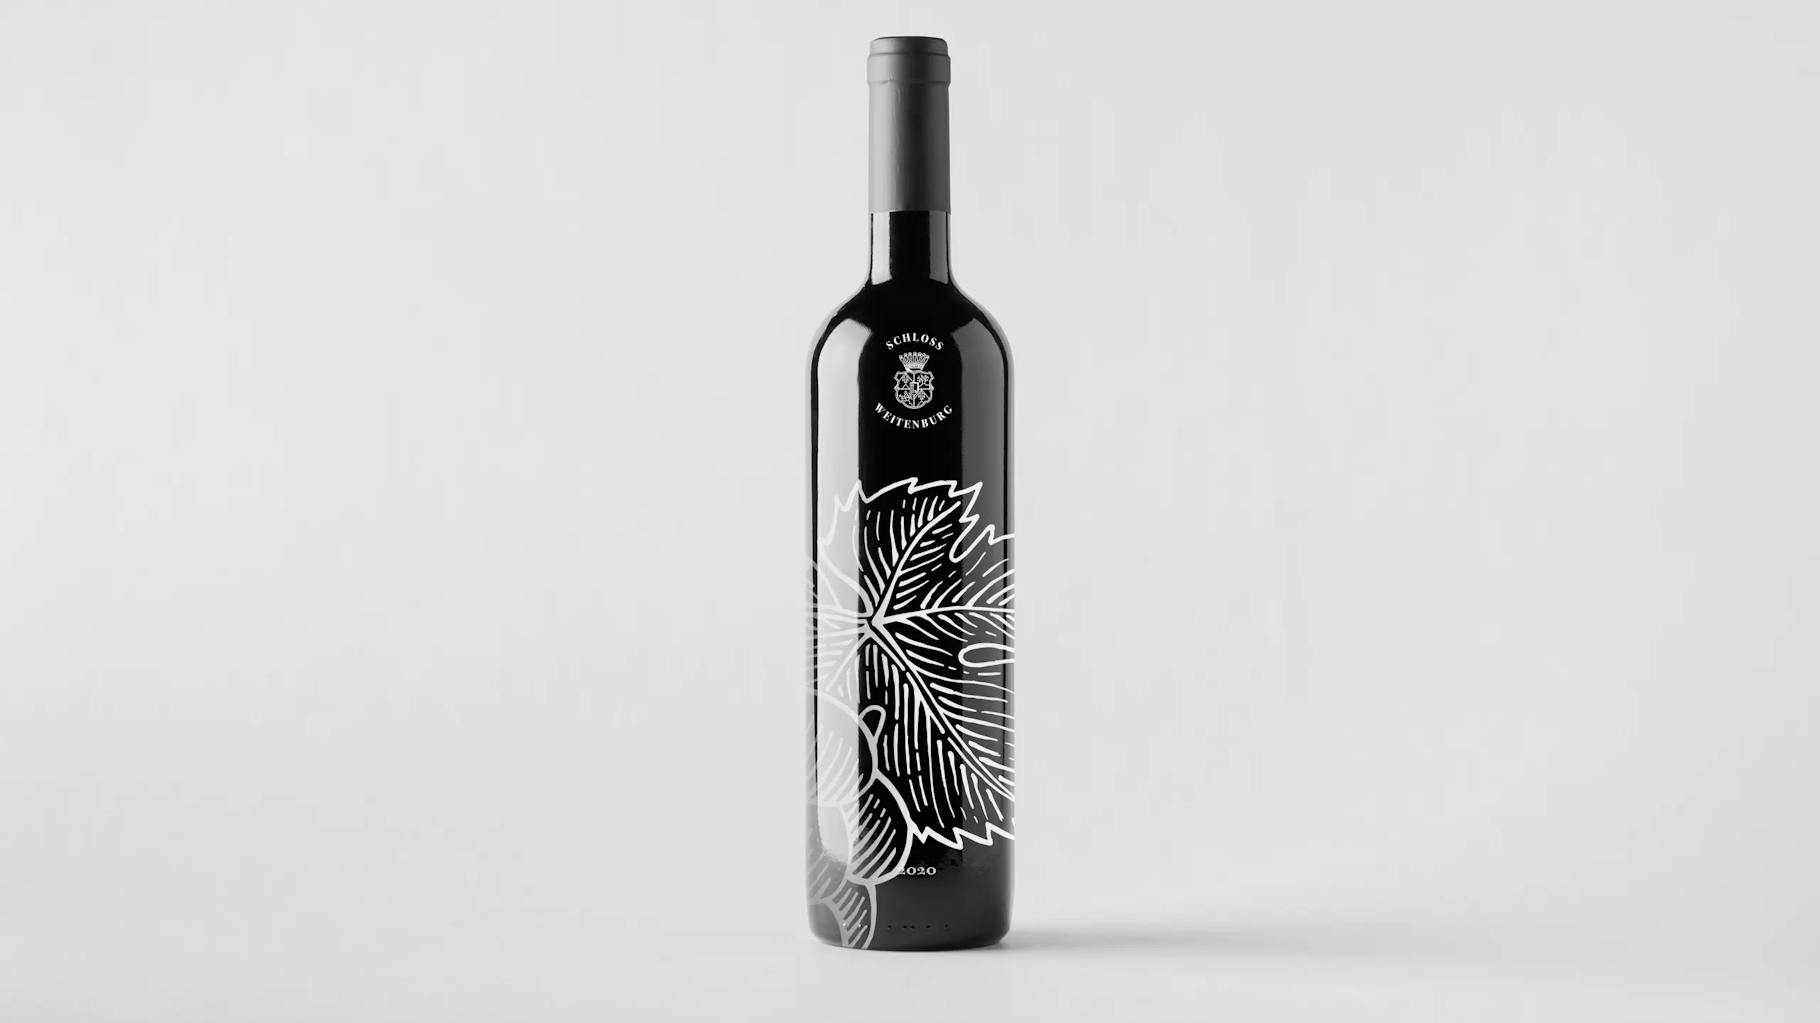 Branding of wine bottles